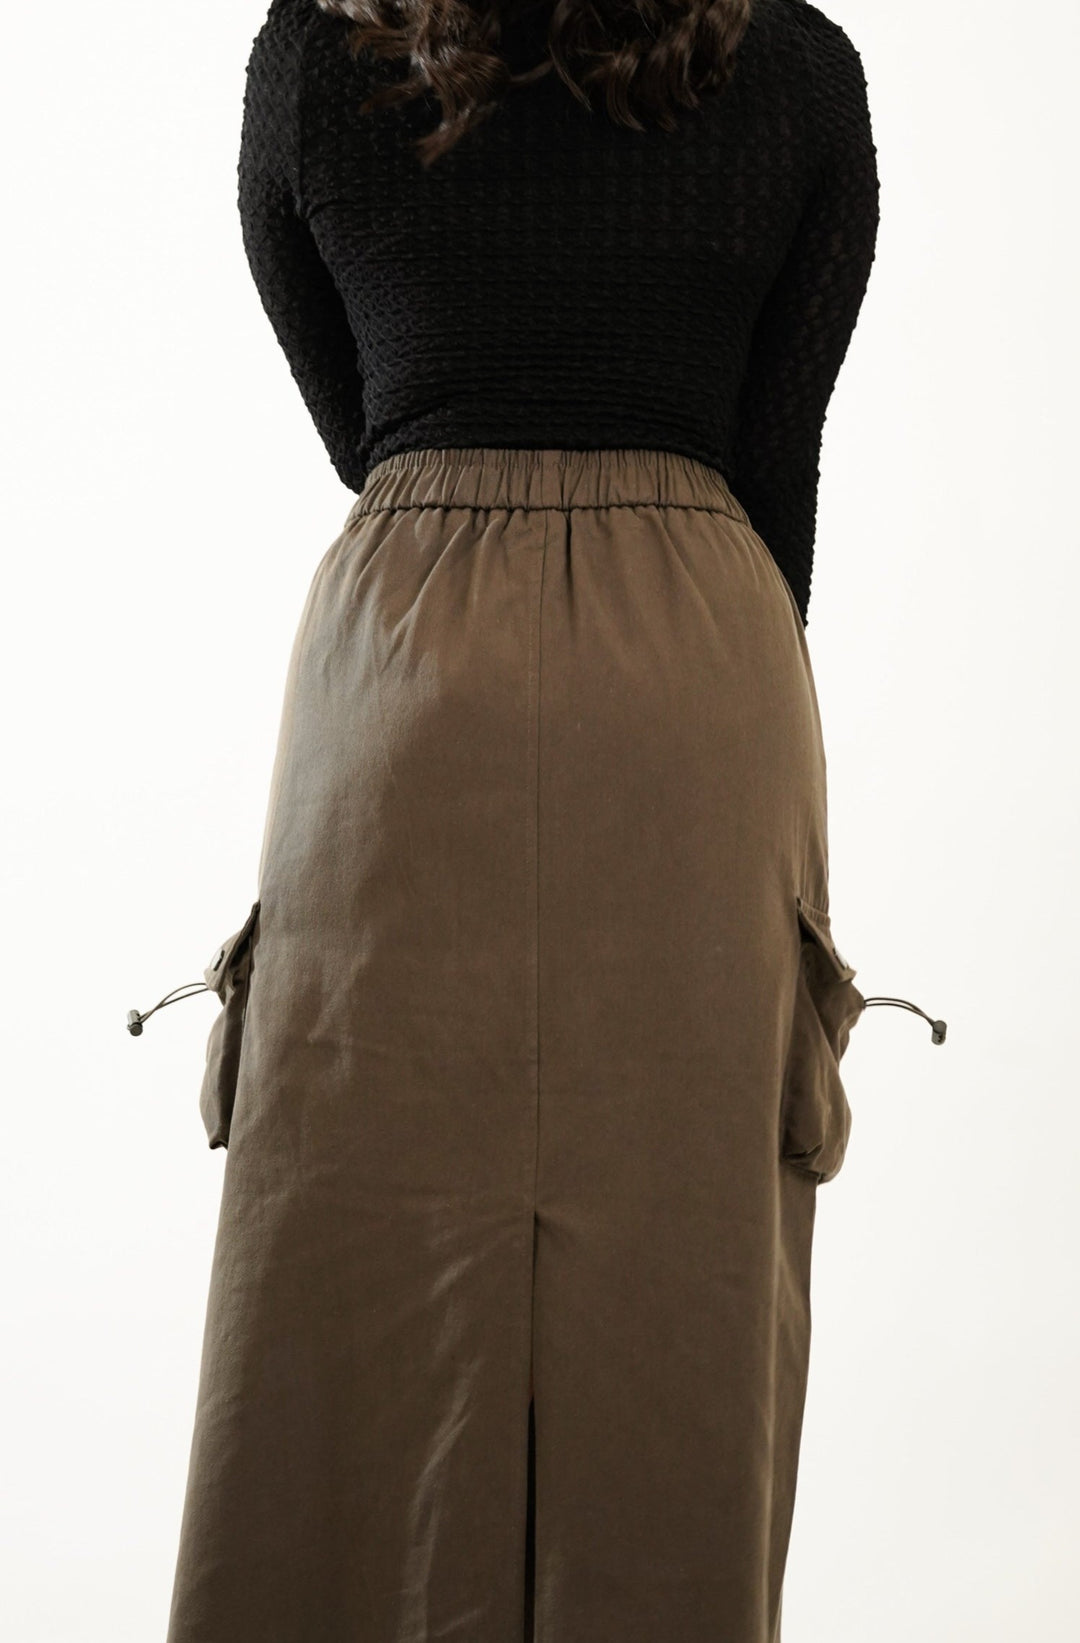 Versatile street style cargo skirt for women